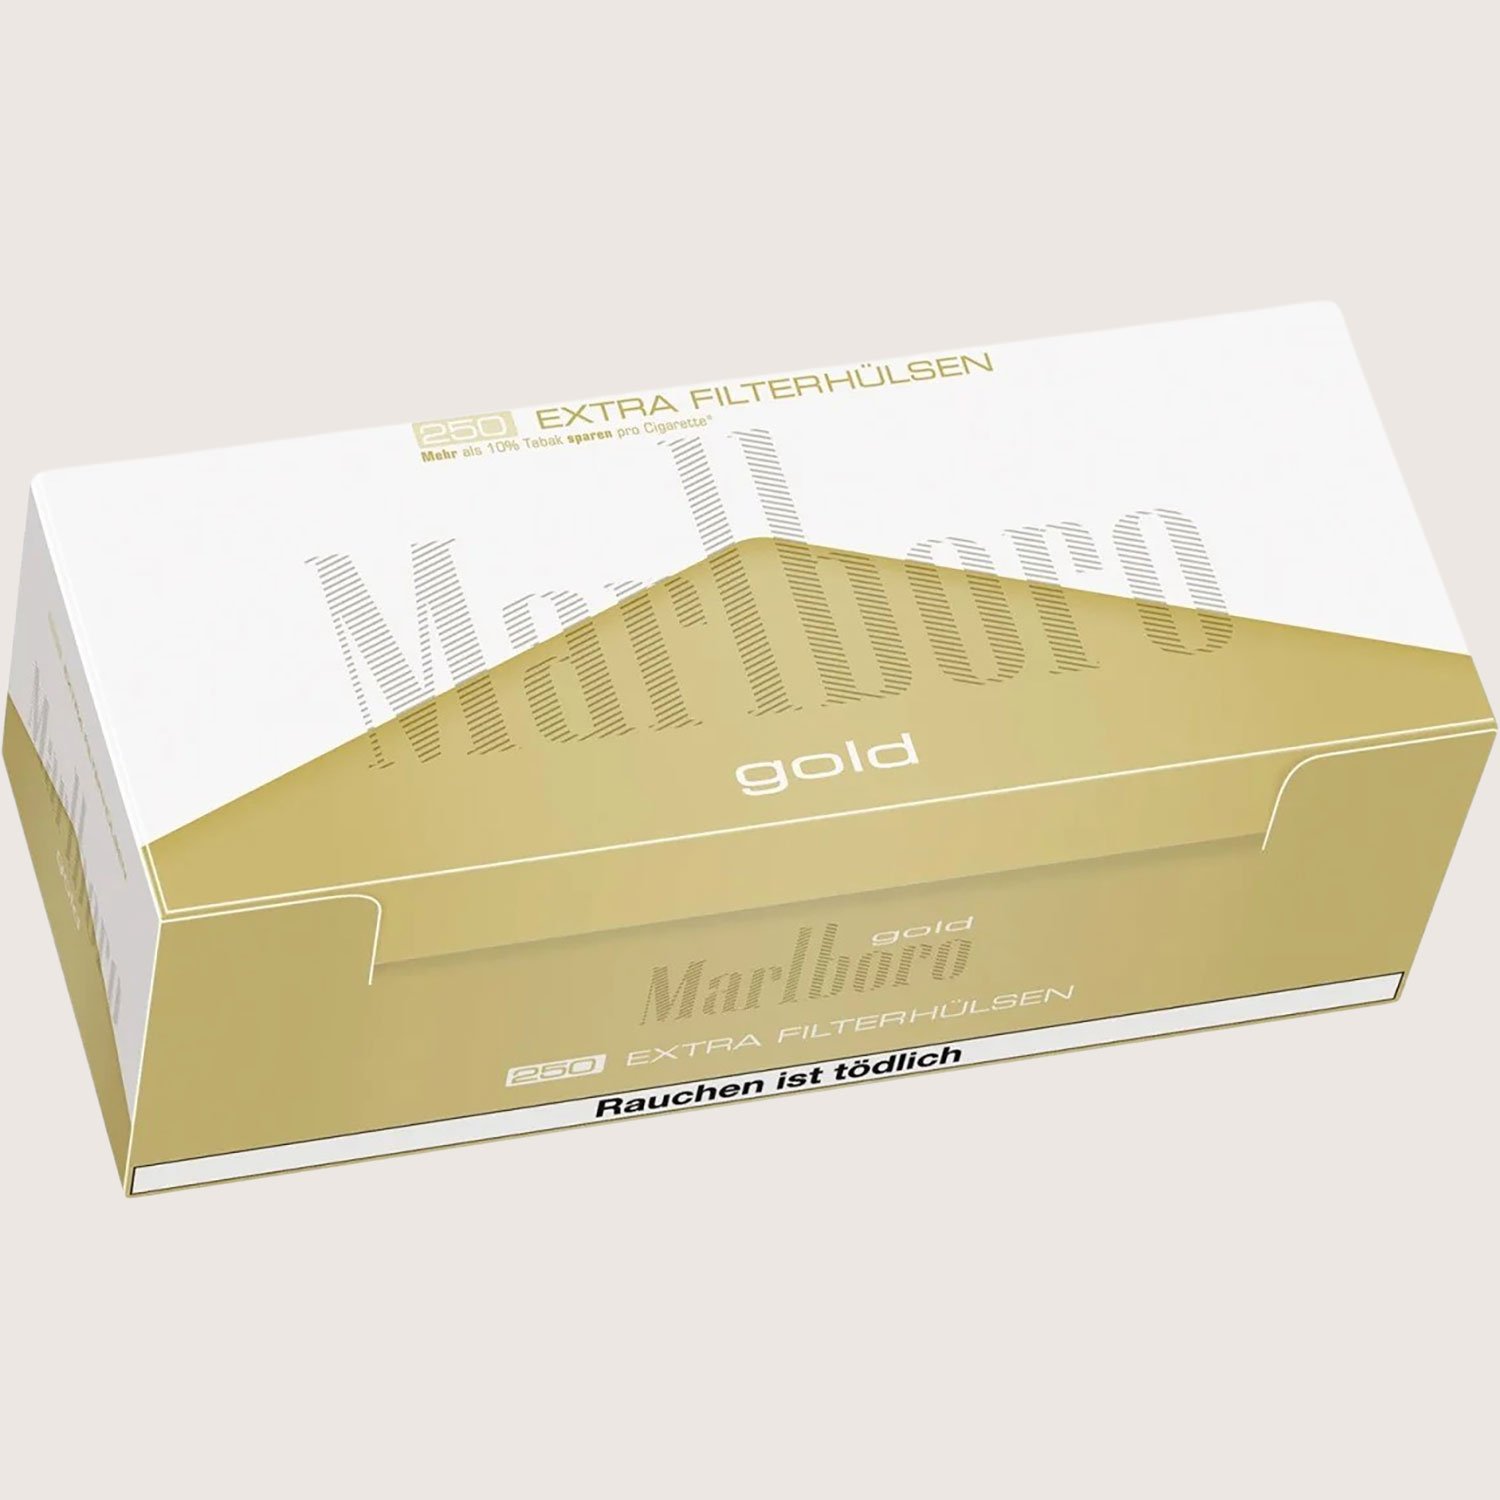 Marlboro Gold Extra 250 Hülsen